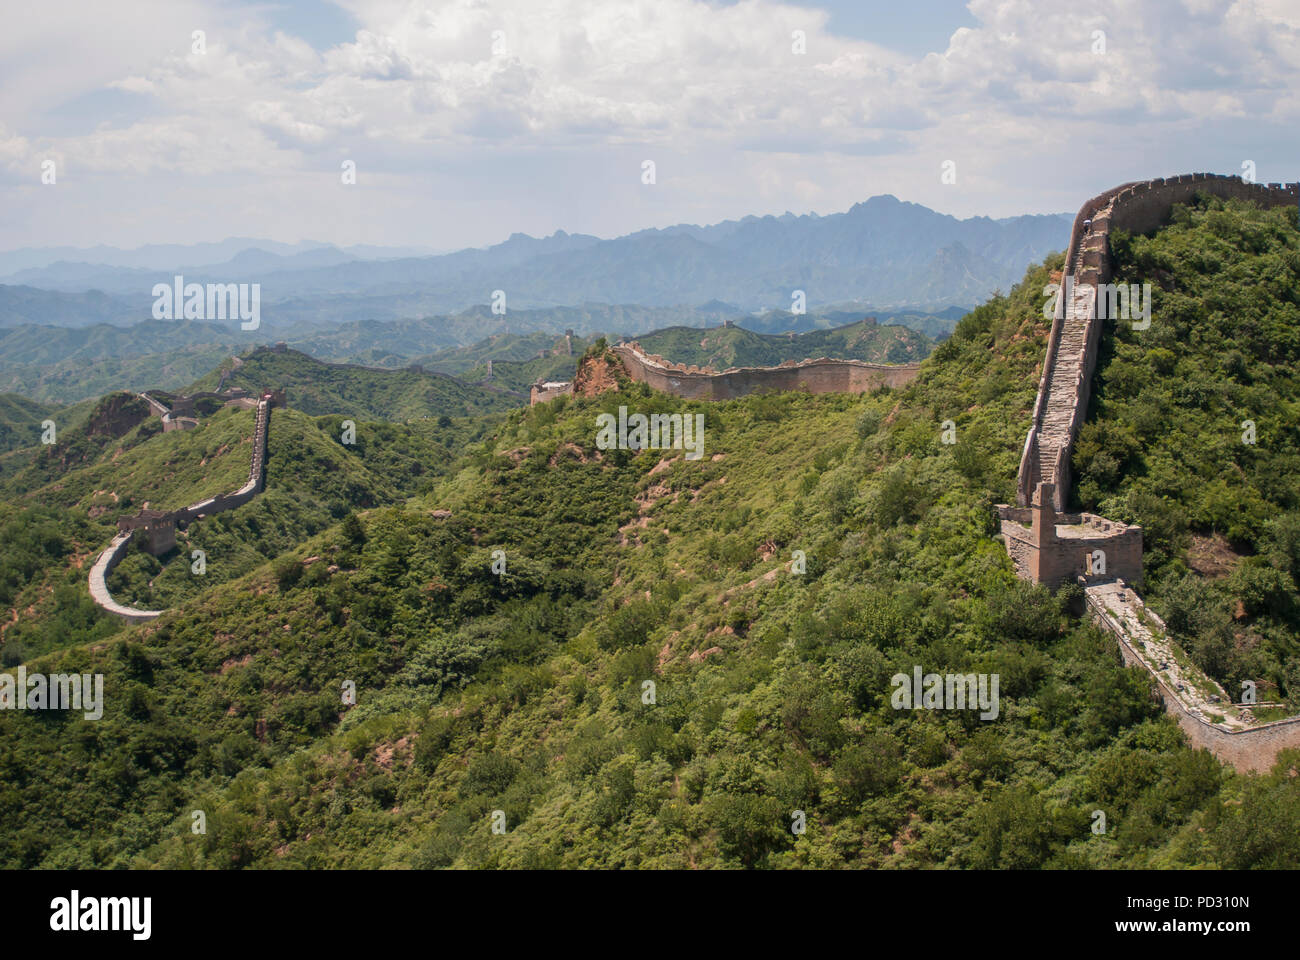 La Gran Muralla de China en tour caminando Jinshanling, una ruta de senderismo popular y una de las piezas mejor conservadas de la Gran Muralla con muchas características originales. Foto de stock